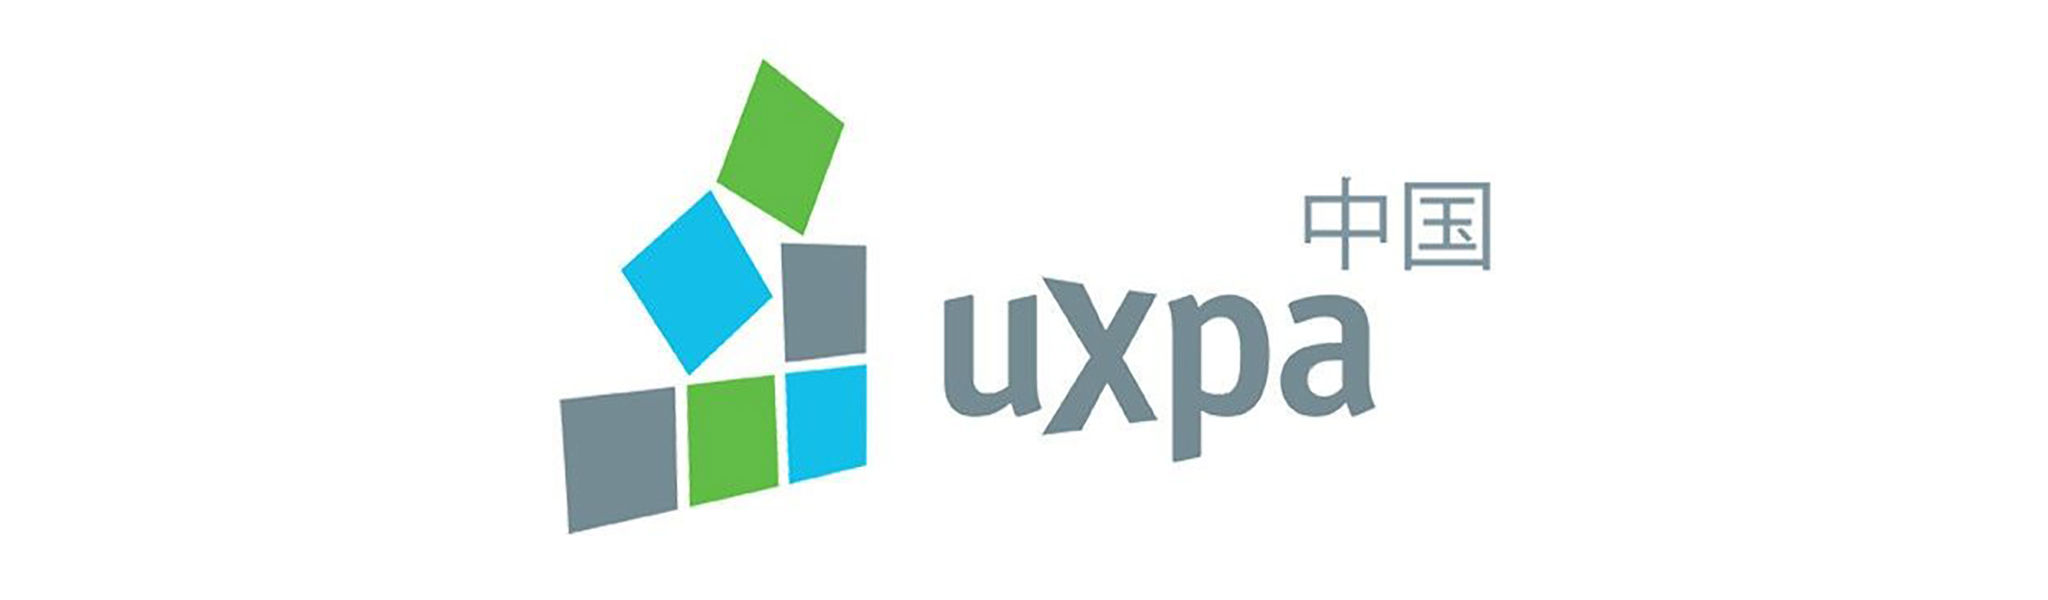 Spiegel Institut ist Mitglied der UXPA China